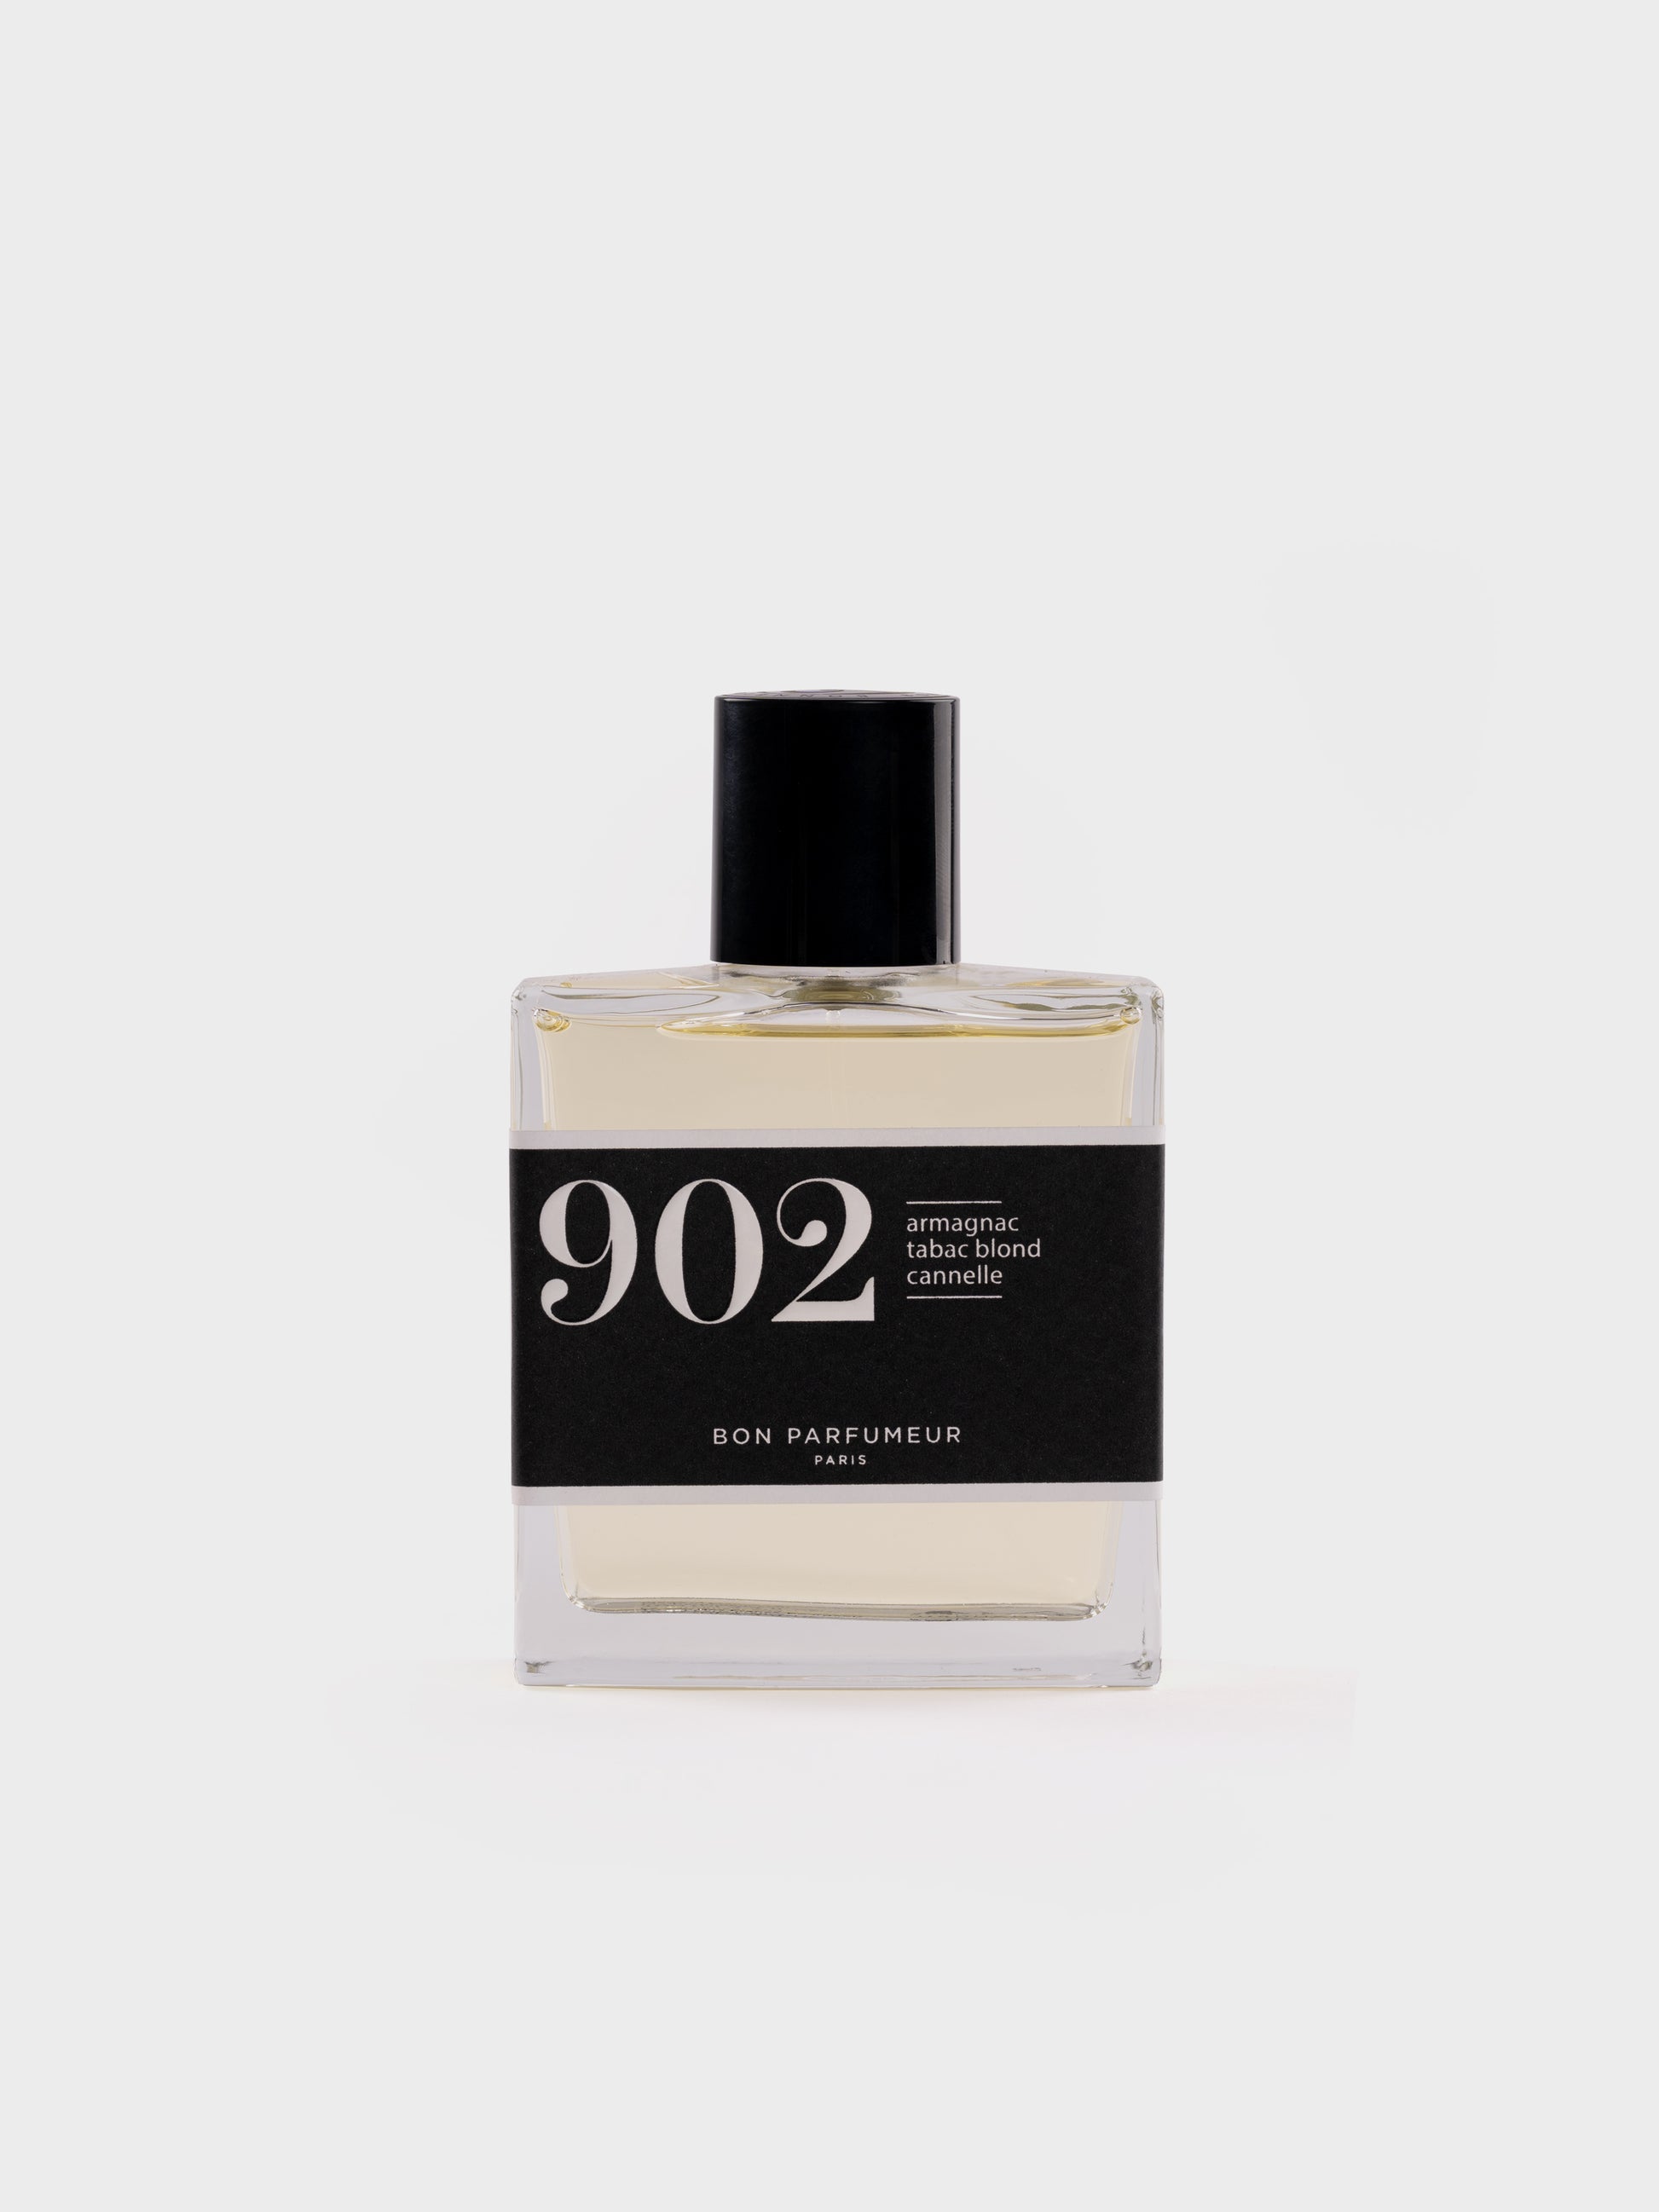 Bon Parfumeur 902 Eau de Parfum 30ml